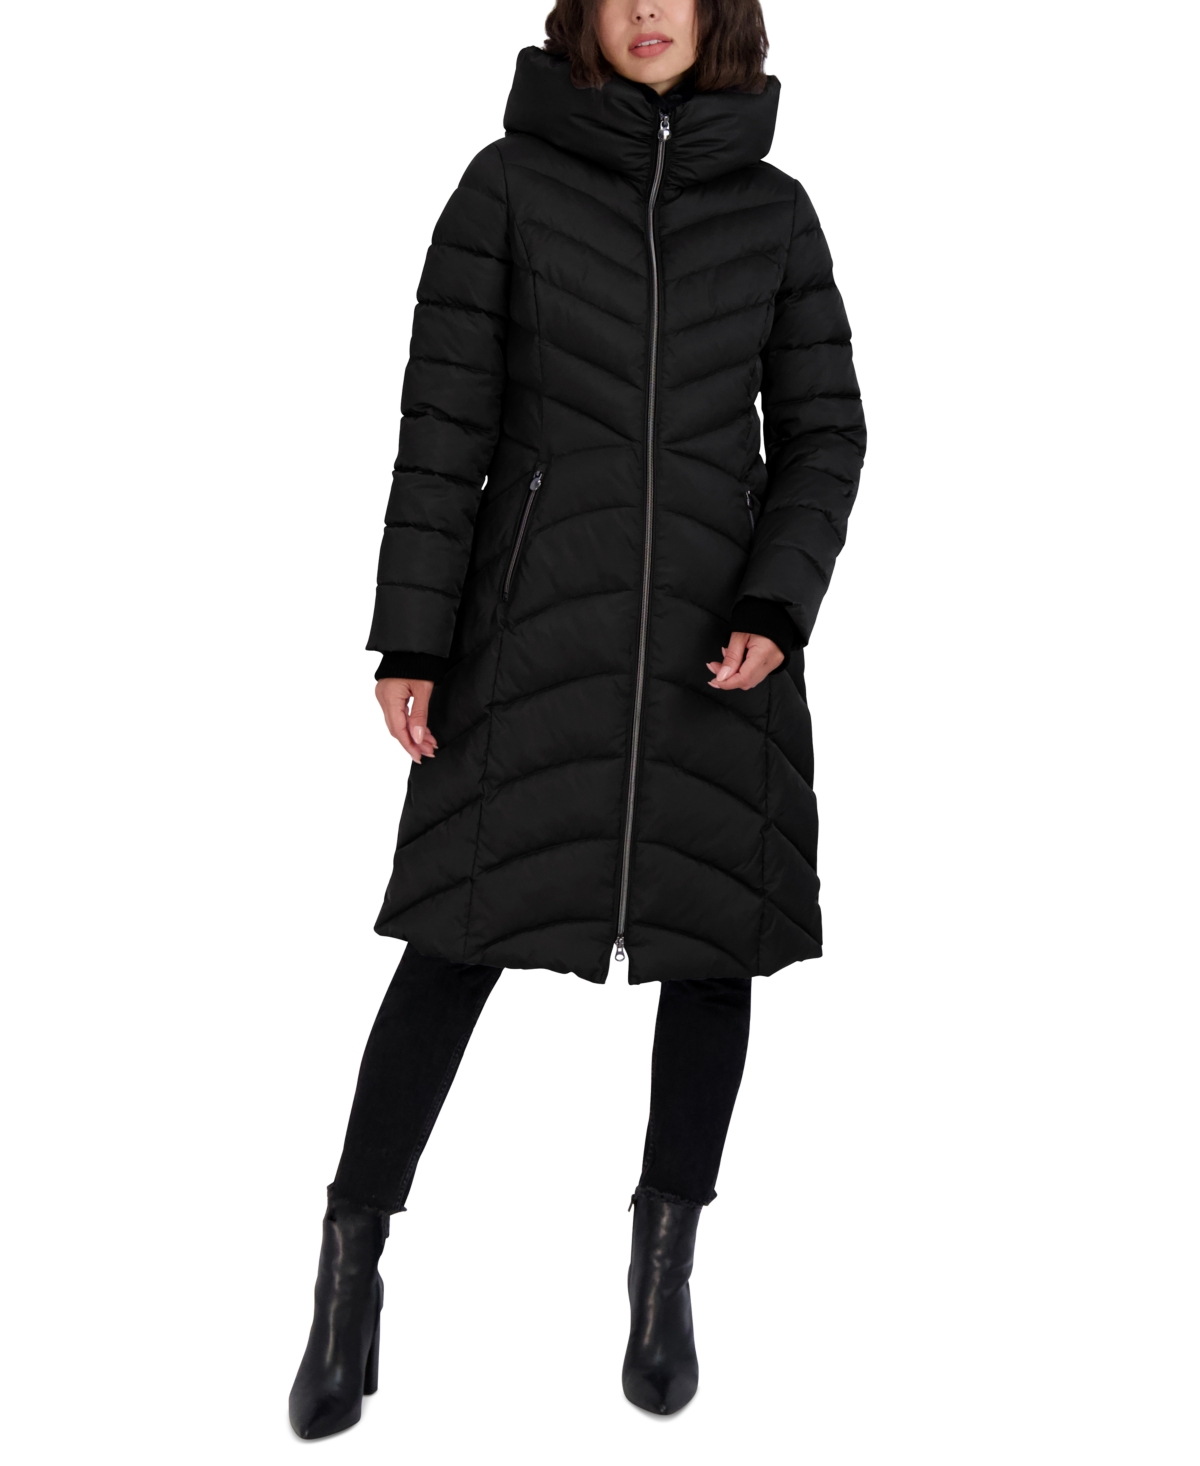 Women's Hooded Puffer Coat - Black